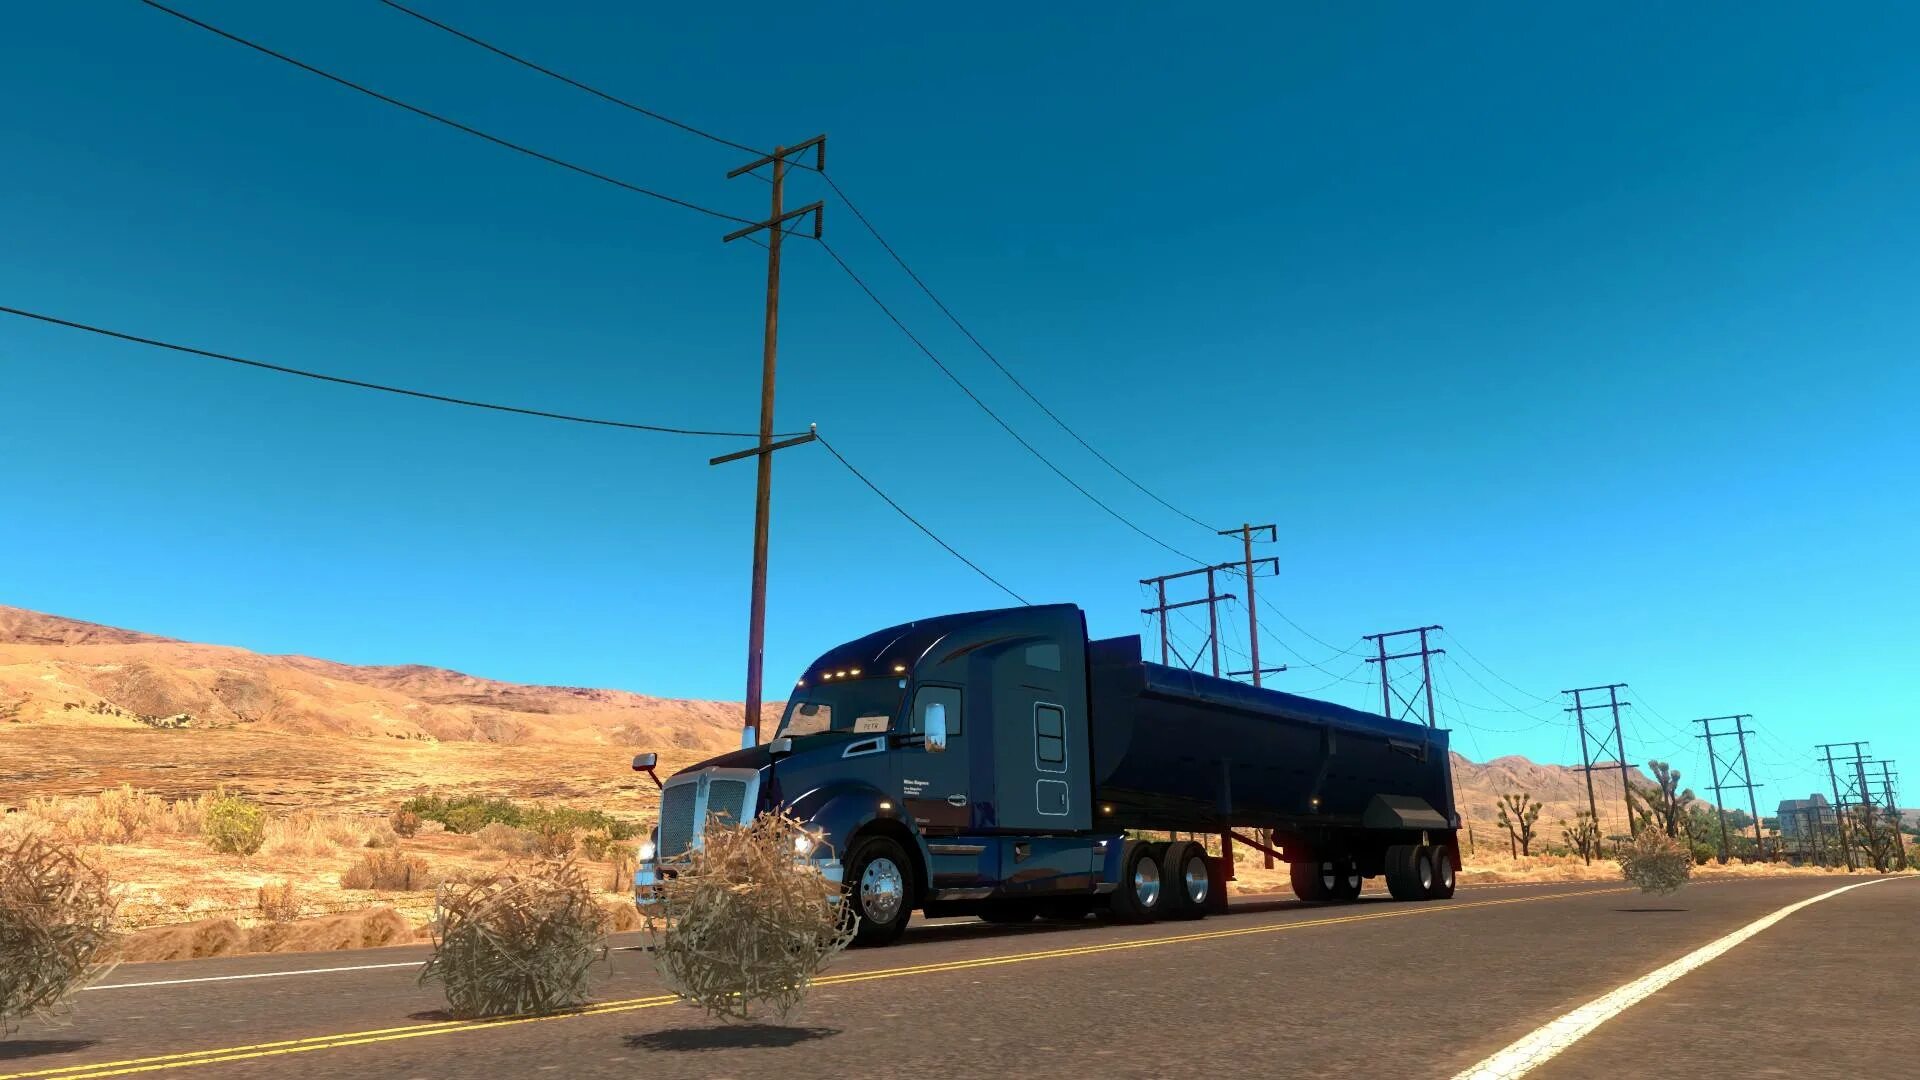 American truck simulator. American Truck Simulator 2. American Truck Simulator California. American Truck Simulator 2 скрины. Траки Калифорния.